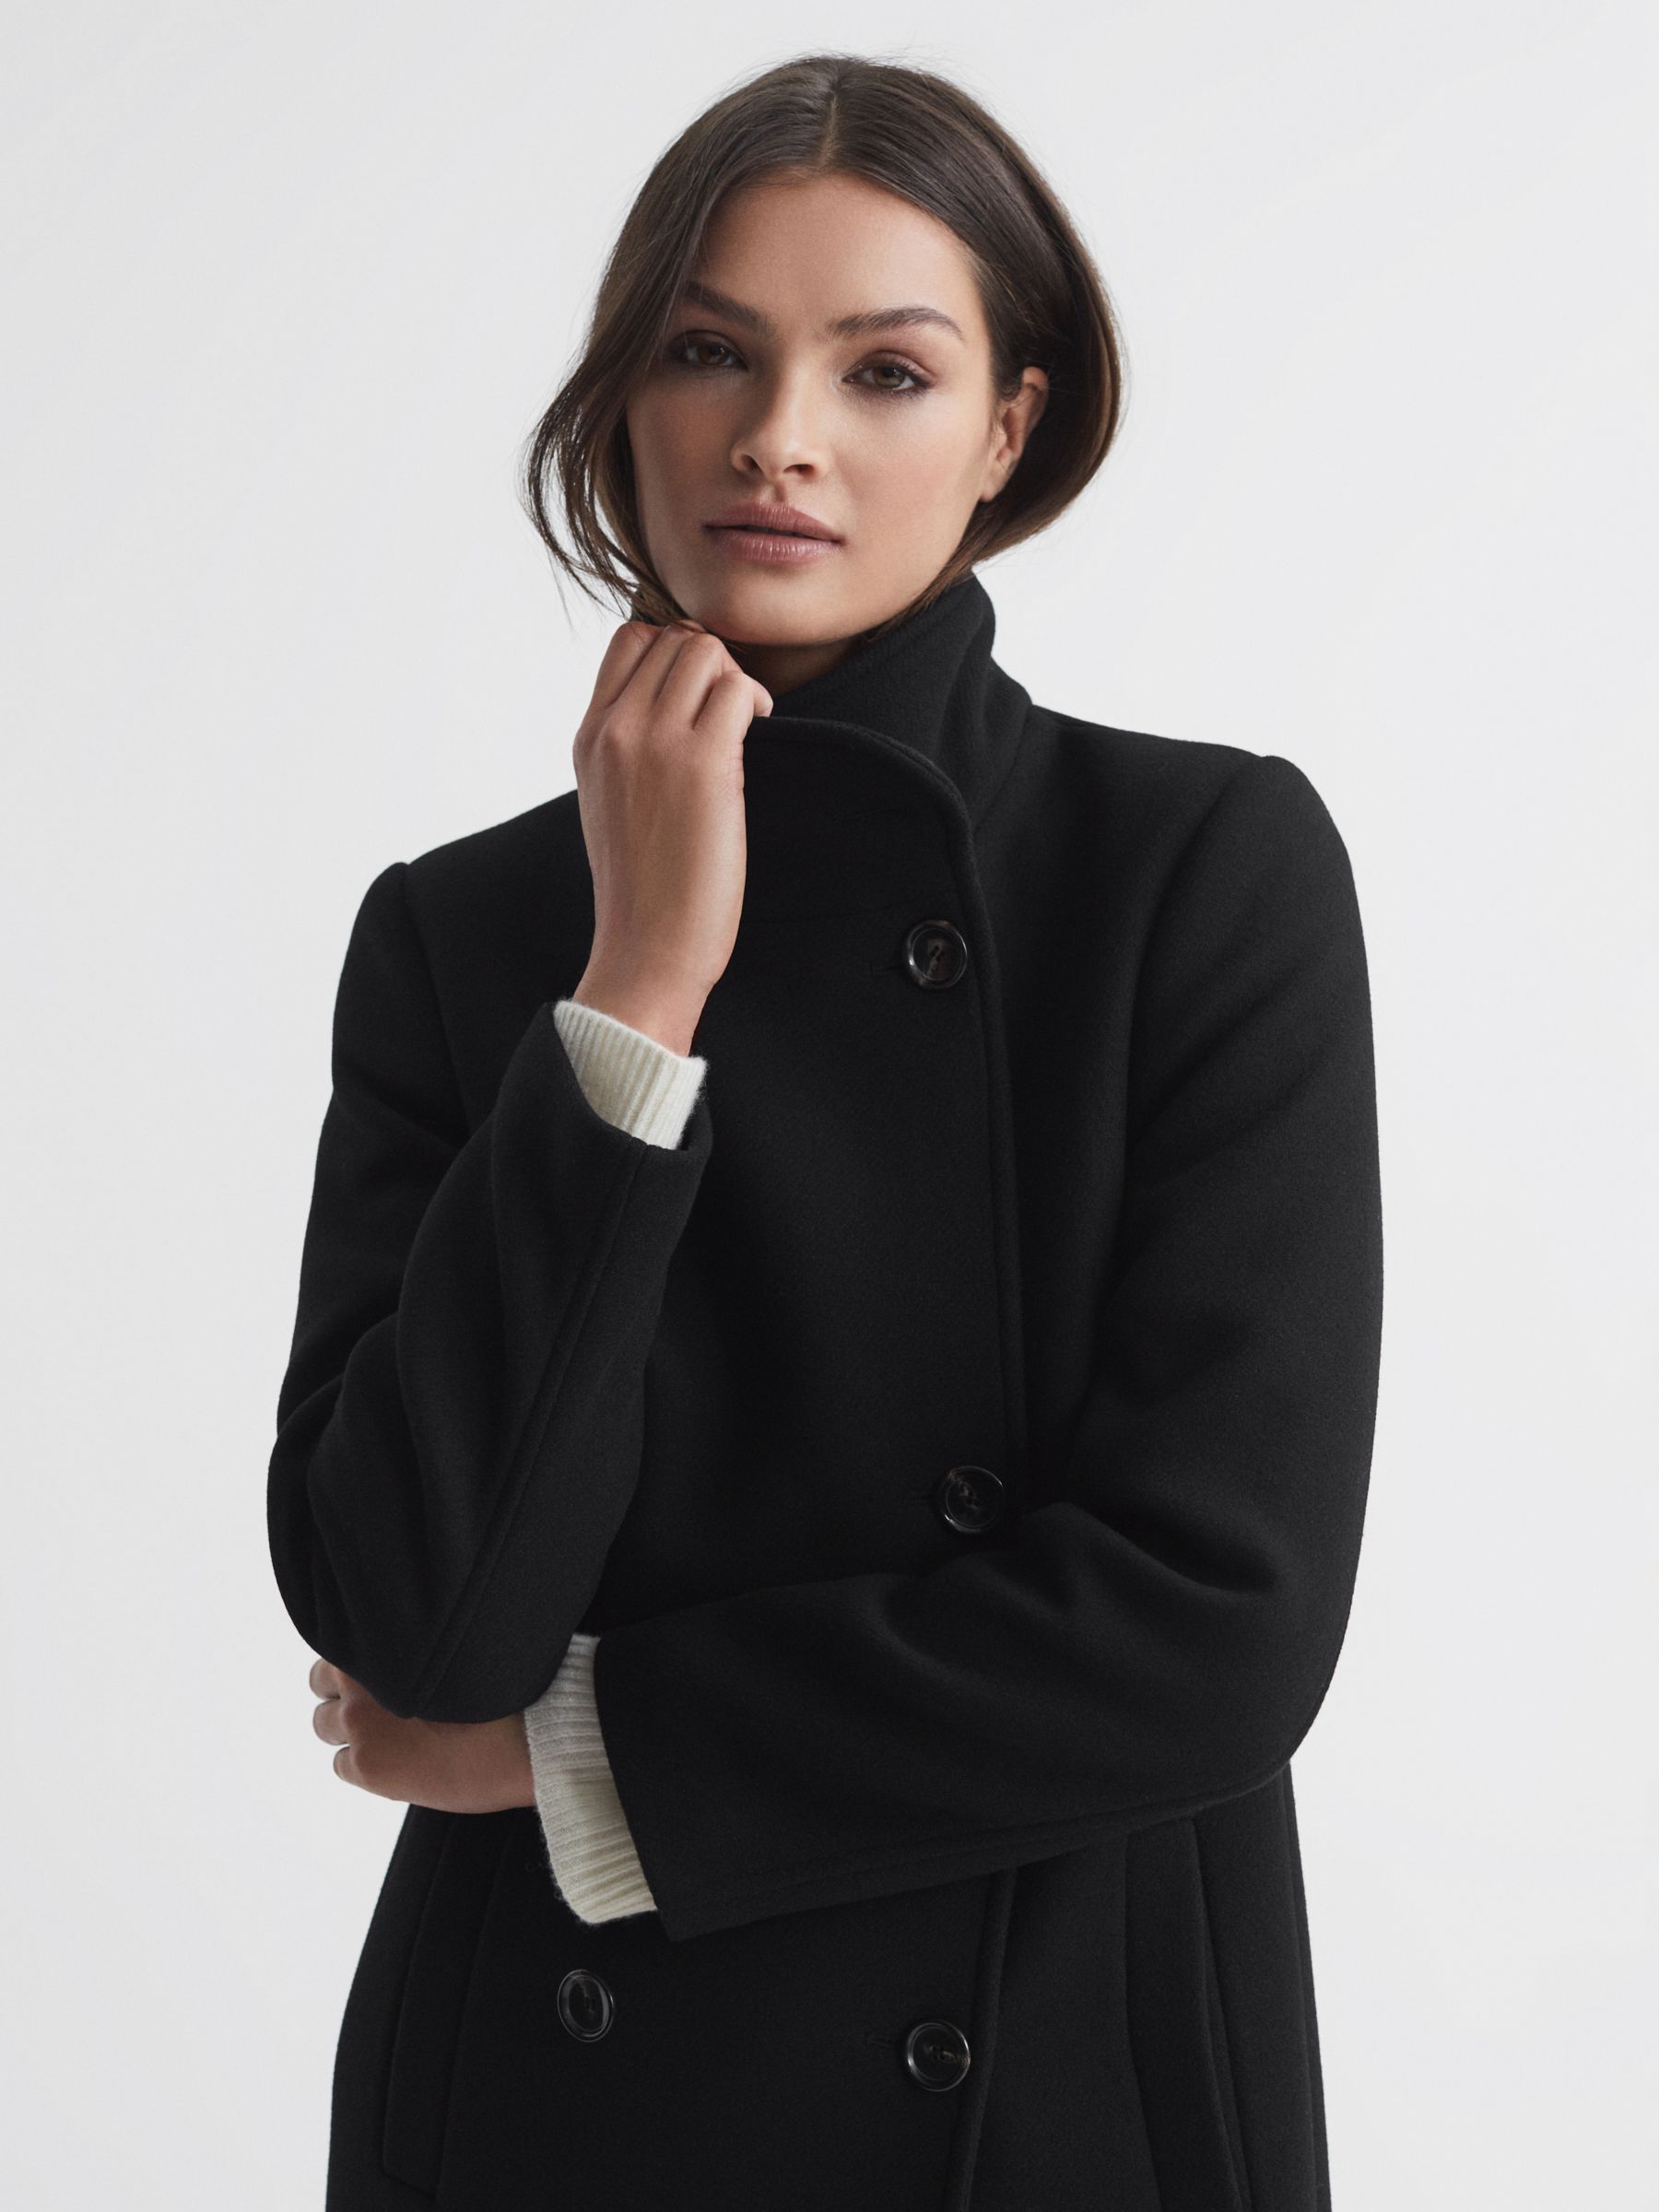 Reiss Petite Blair Wool Blend Coat, Black, 6